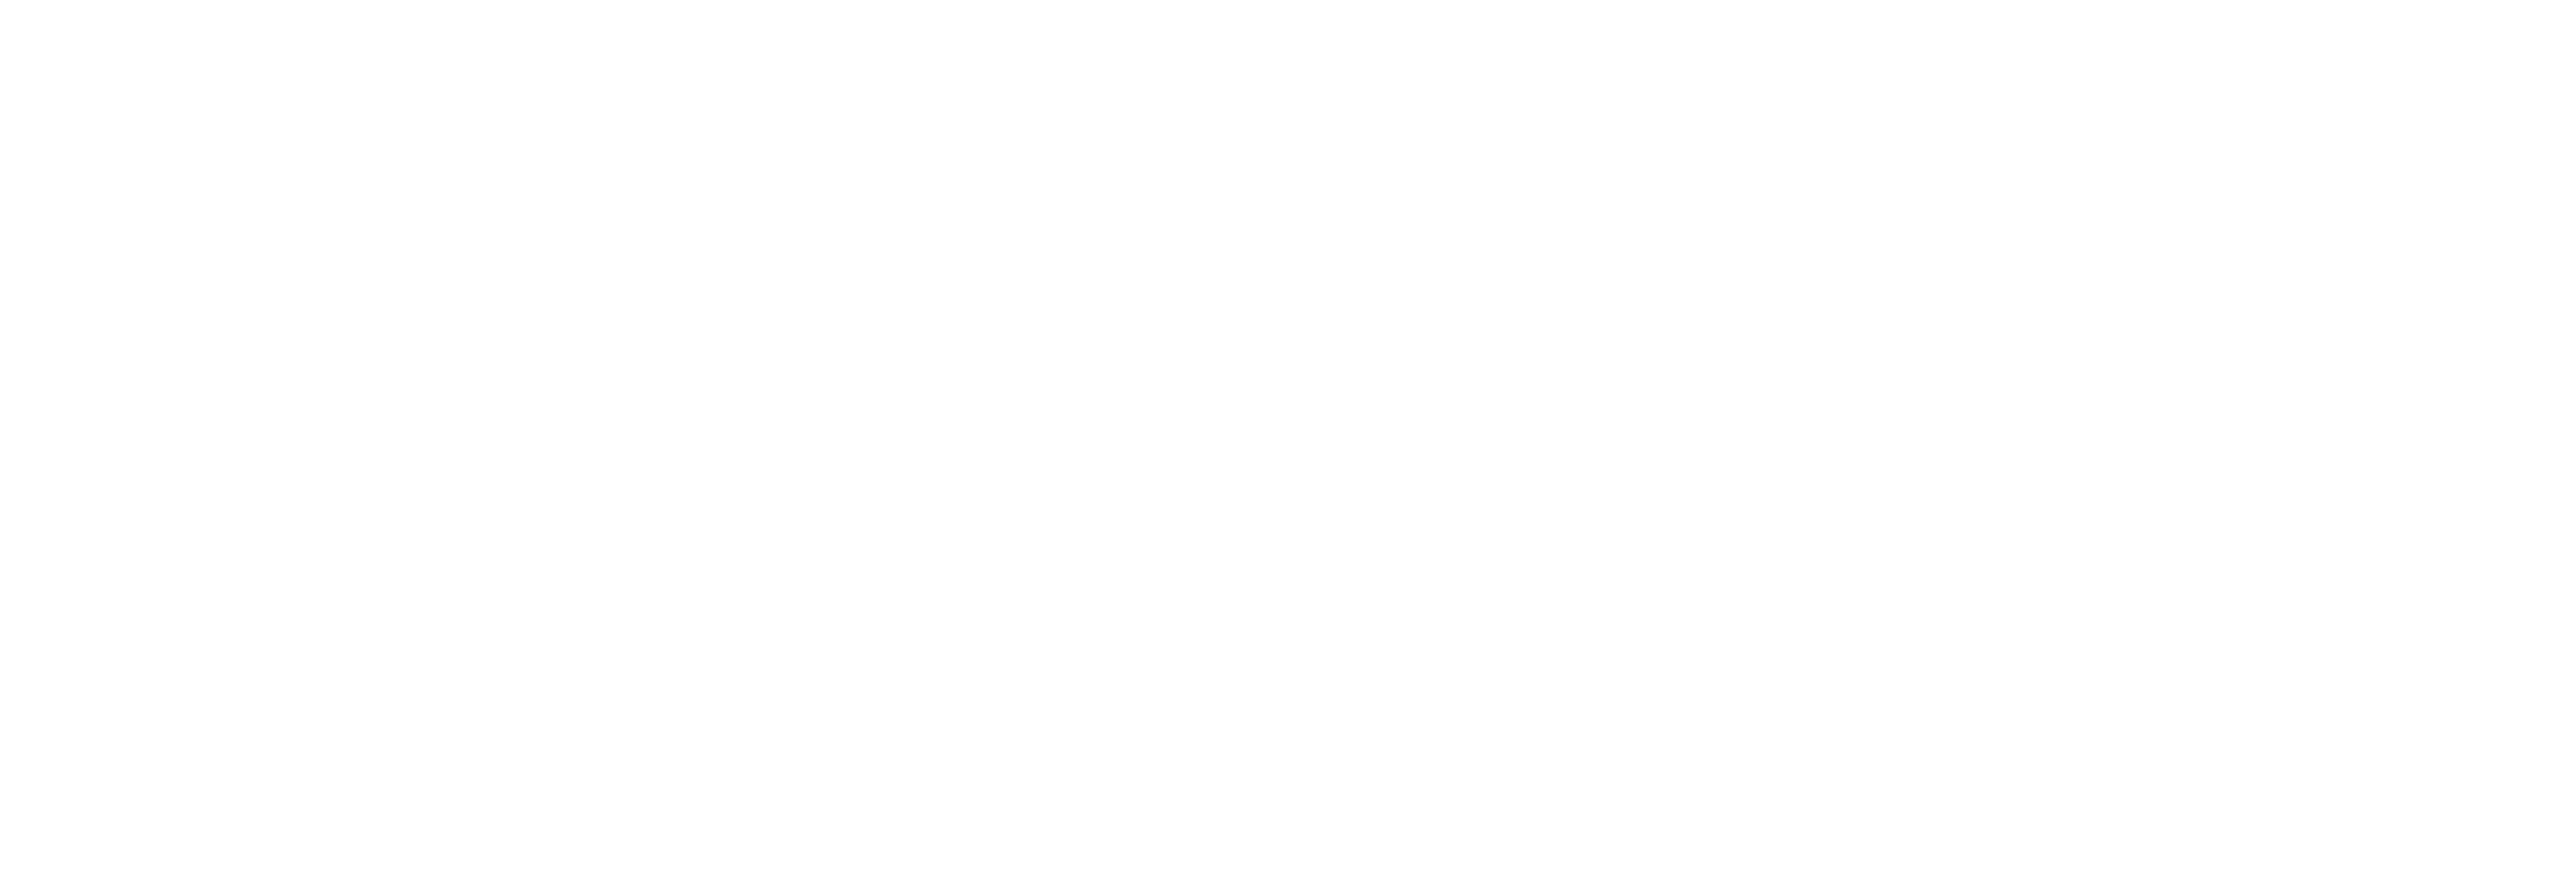 Hotel Coolgardie logo